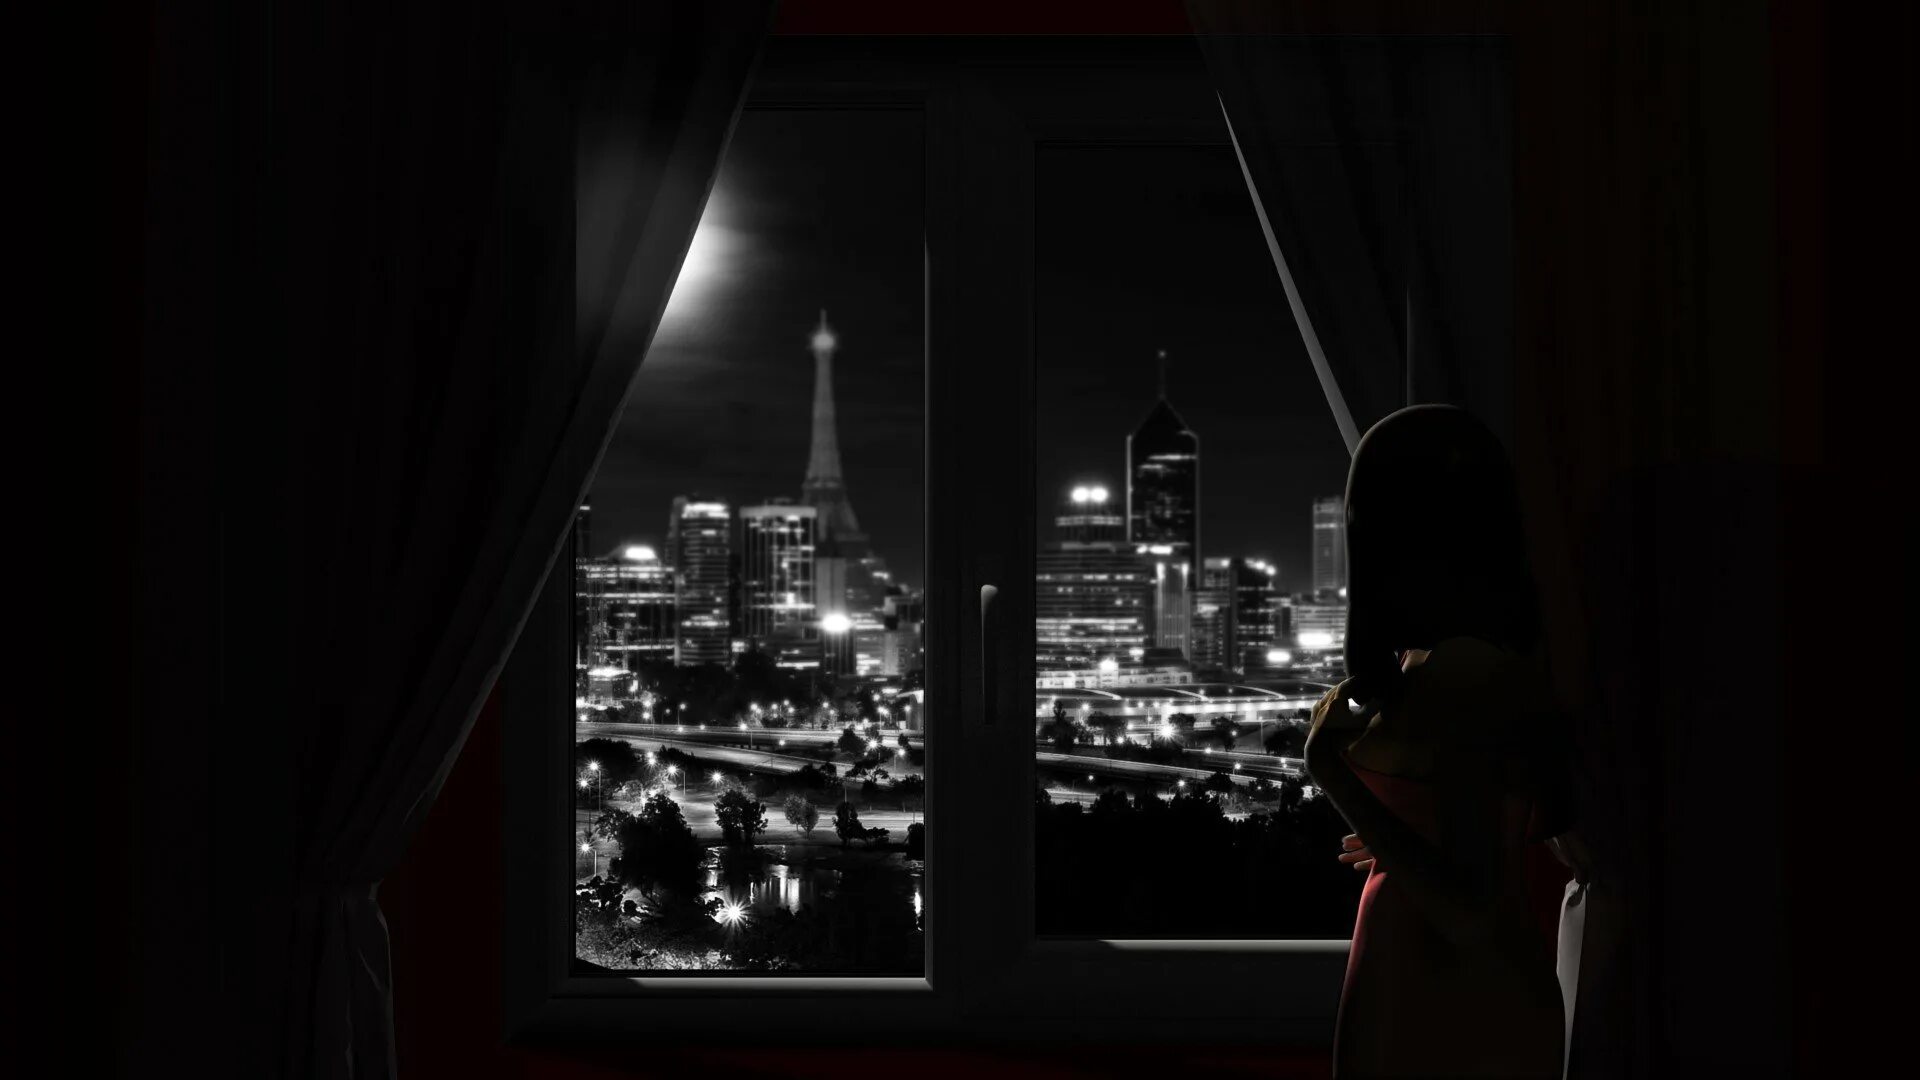 Снятся черные окна. Силуэт в окне. Окно ночь город. Вид ночного города из окна. Вид из окна ночью.